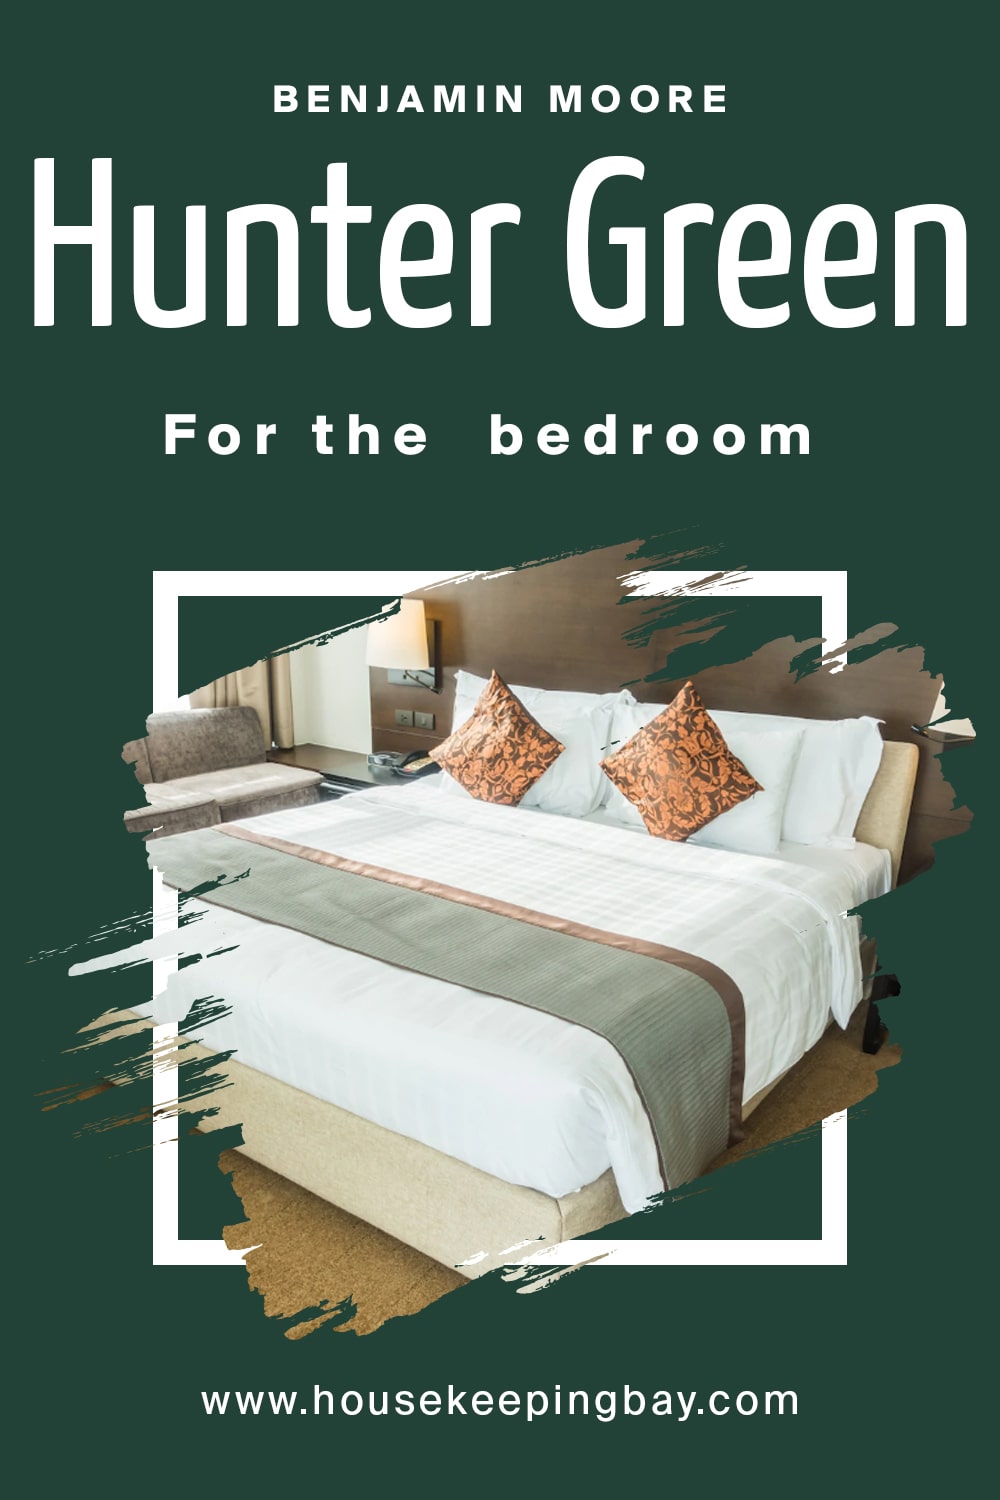 Benjamin Moore. Hunter Green For the bedroom